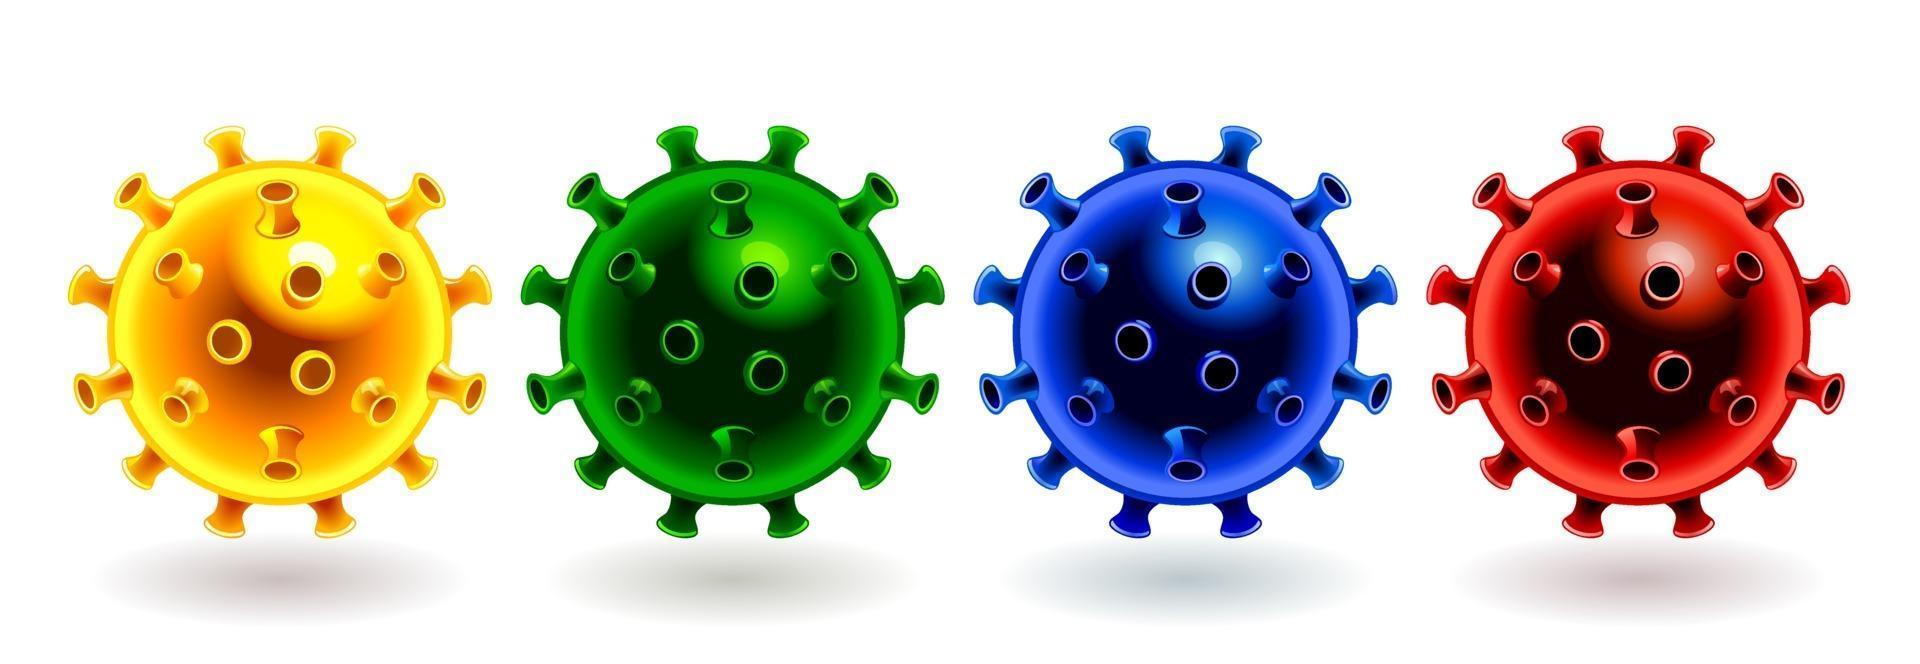 New Coronavirus Vector Set